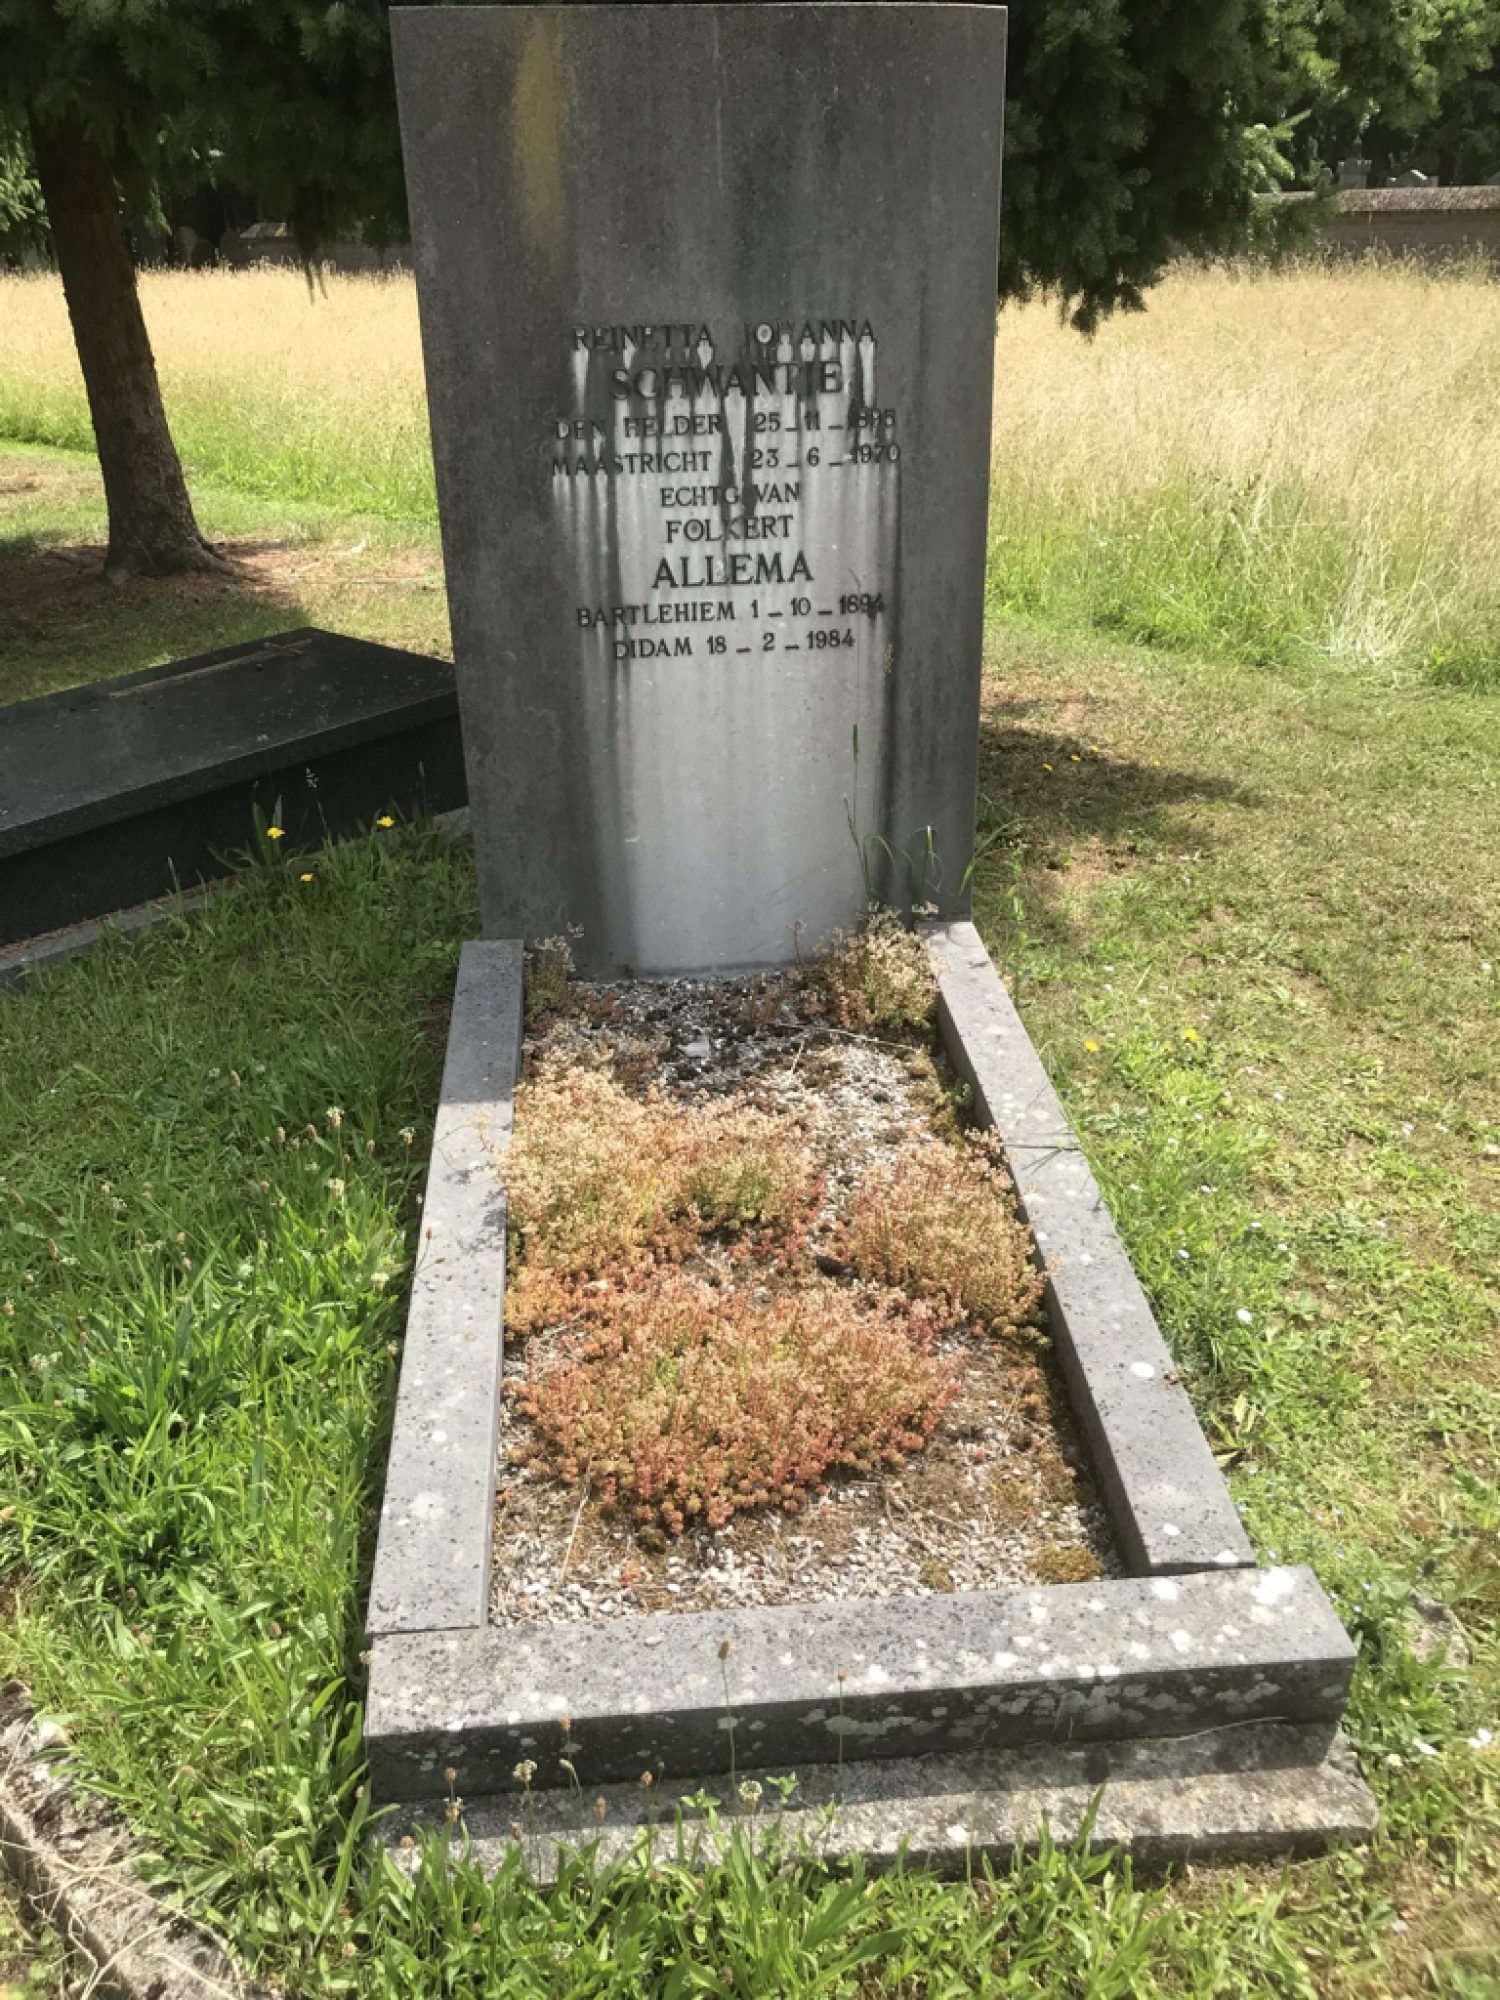 Het graf van Folkert Allema.